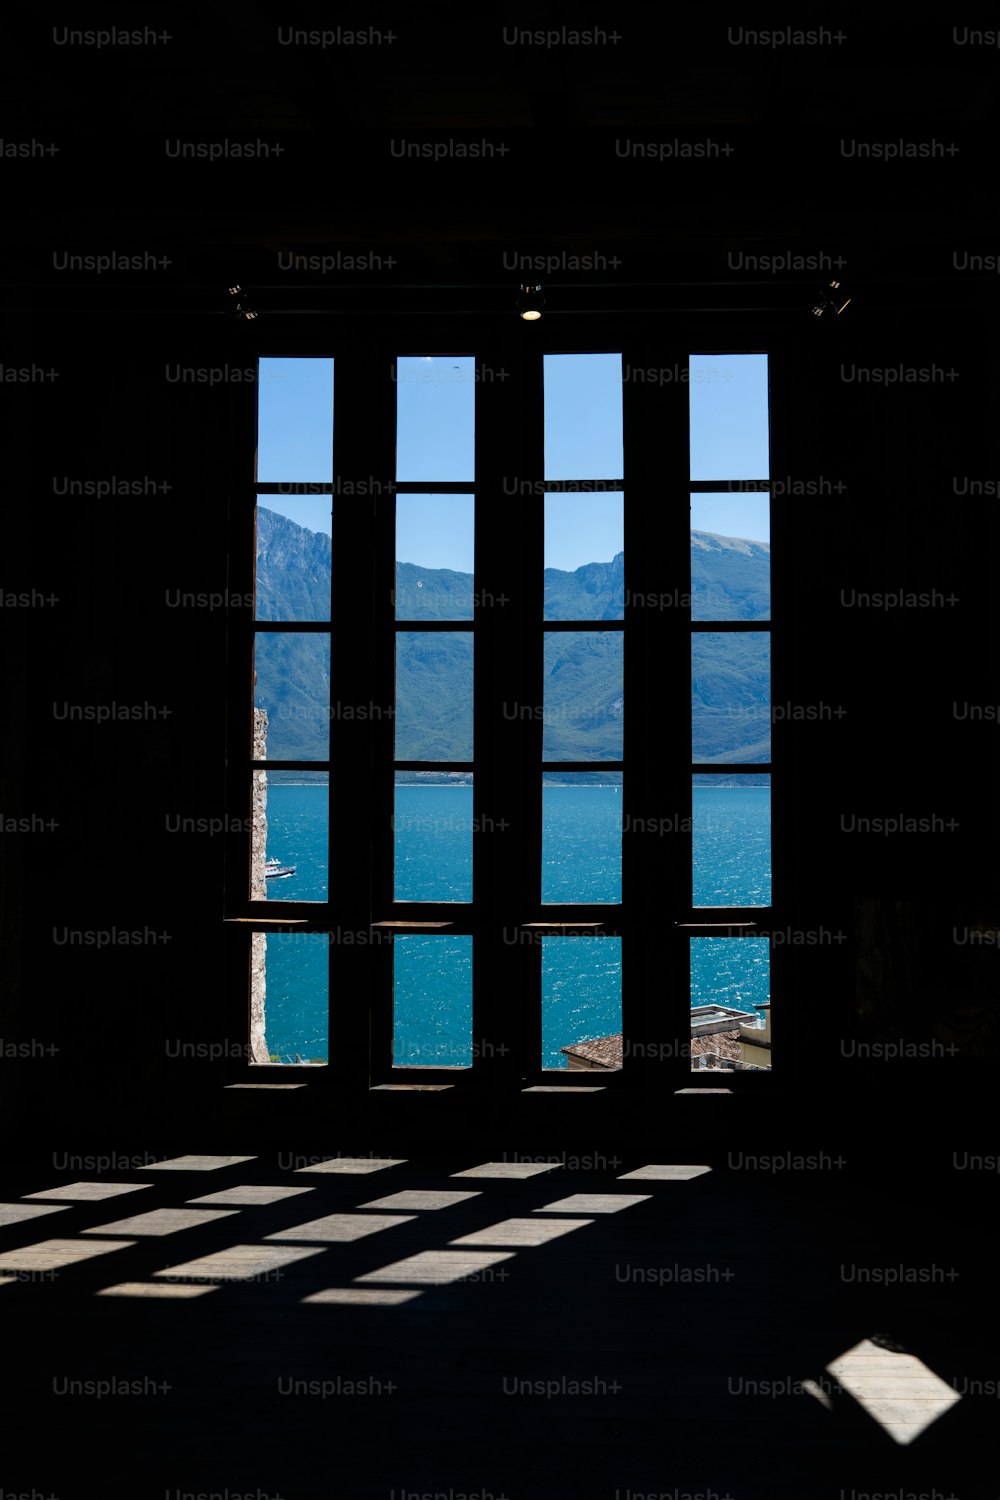 호수와 산의 전망을 감상할 수 있는 창문